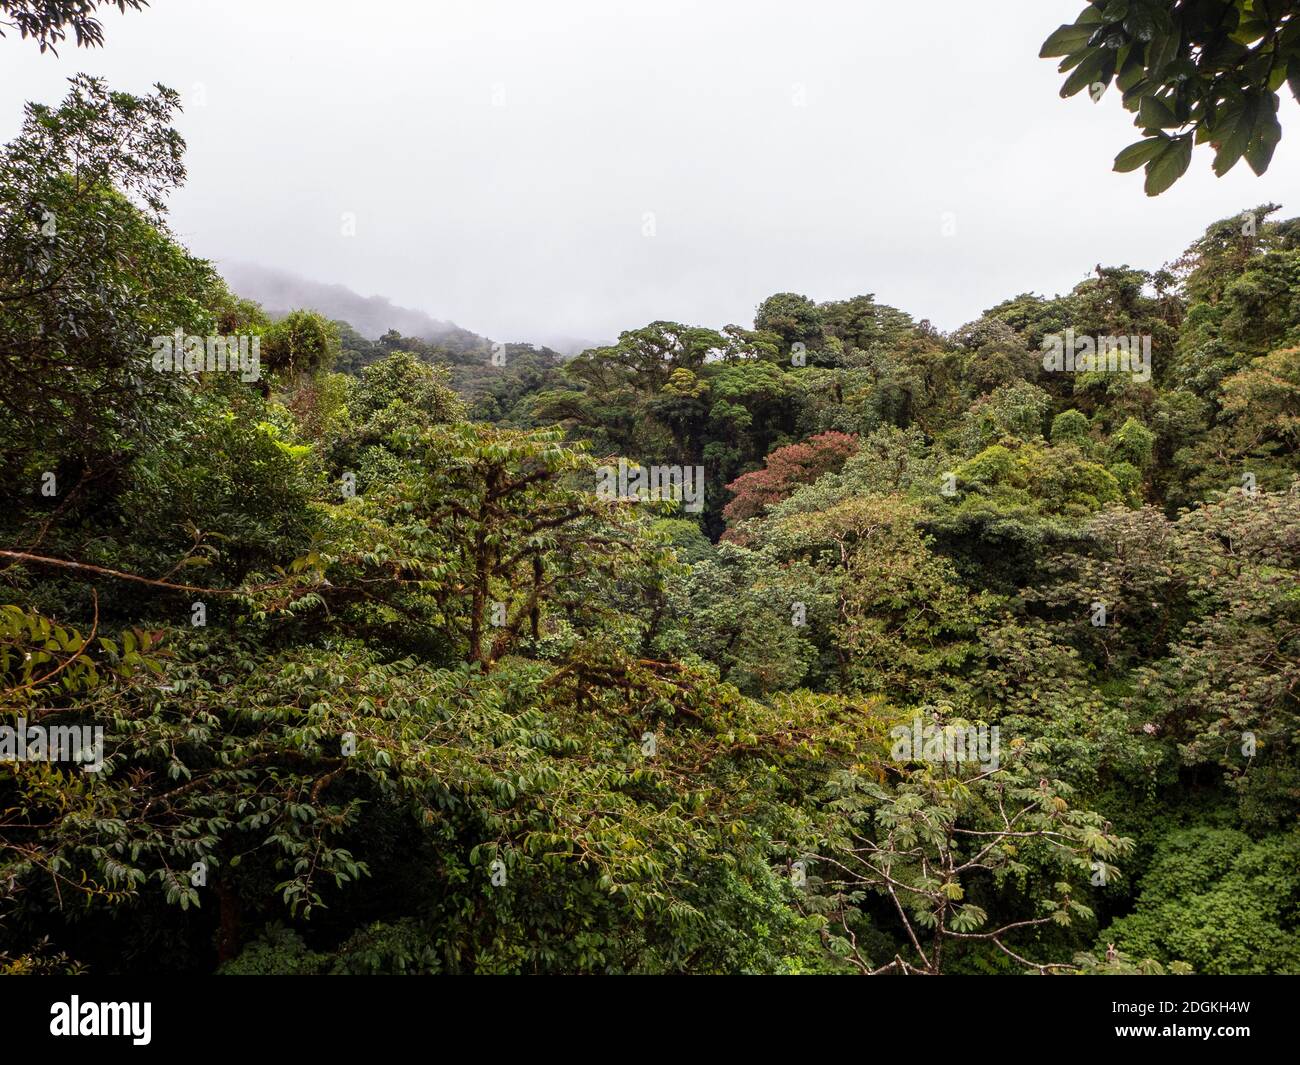 Fai un'escursione attraverso la foresta pluviale della Costa Rica con splendide viste sulle cime degli alberi della riserva della foresta pluviale di Santa Elena. Foto Stock